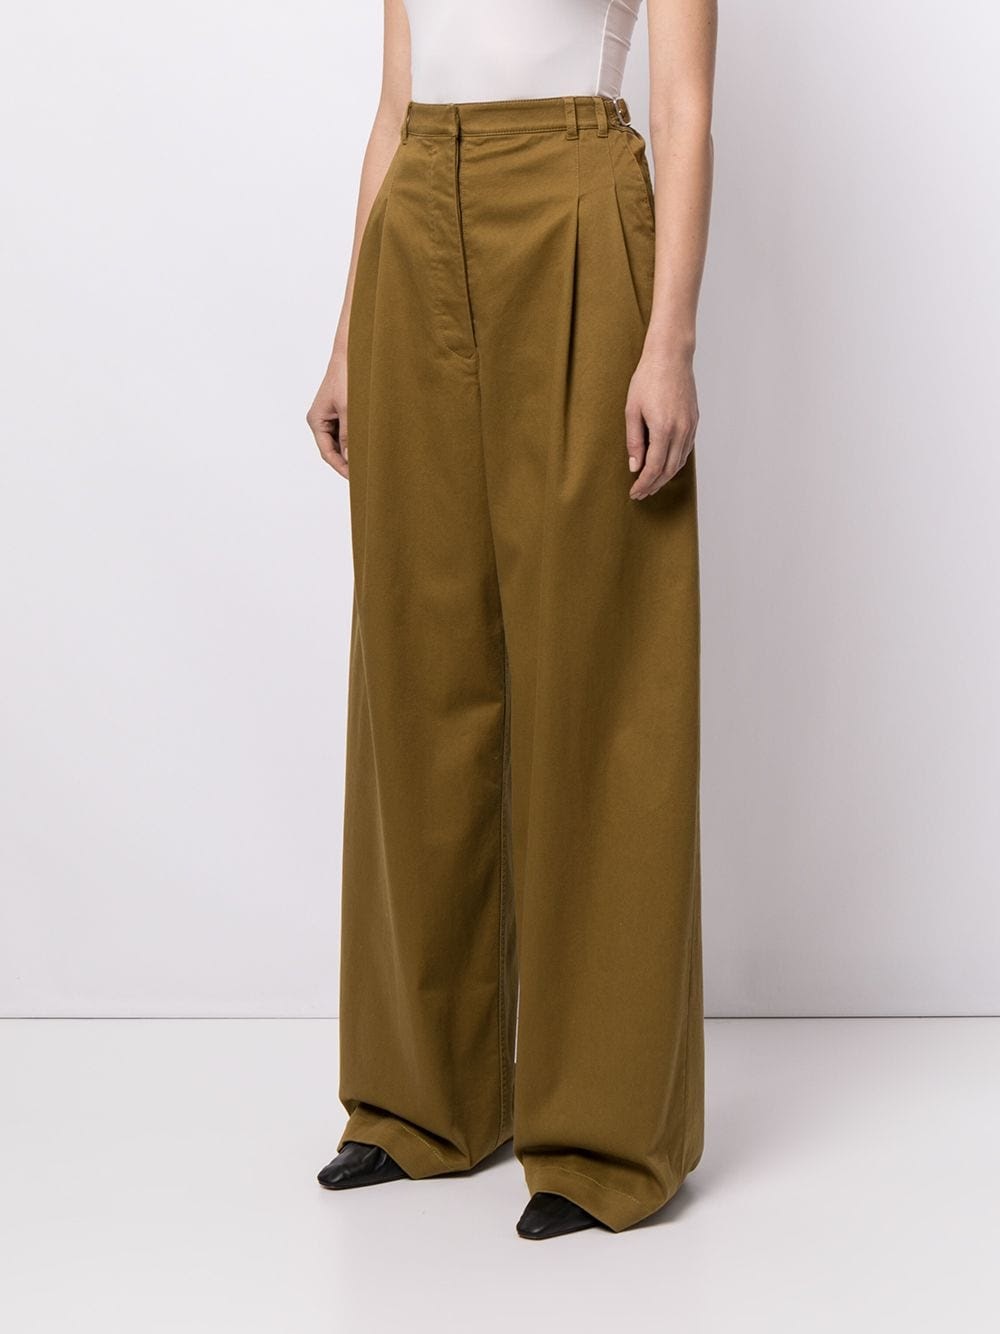 Wide-leg pants and culotte pants Comfy clothes BELatina Latinx